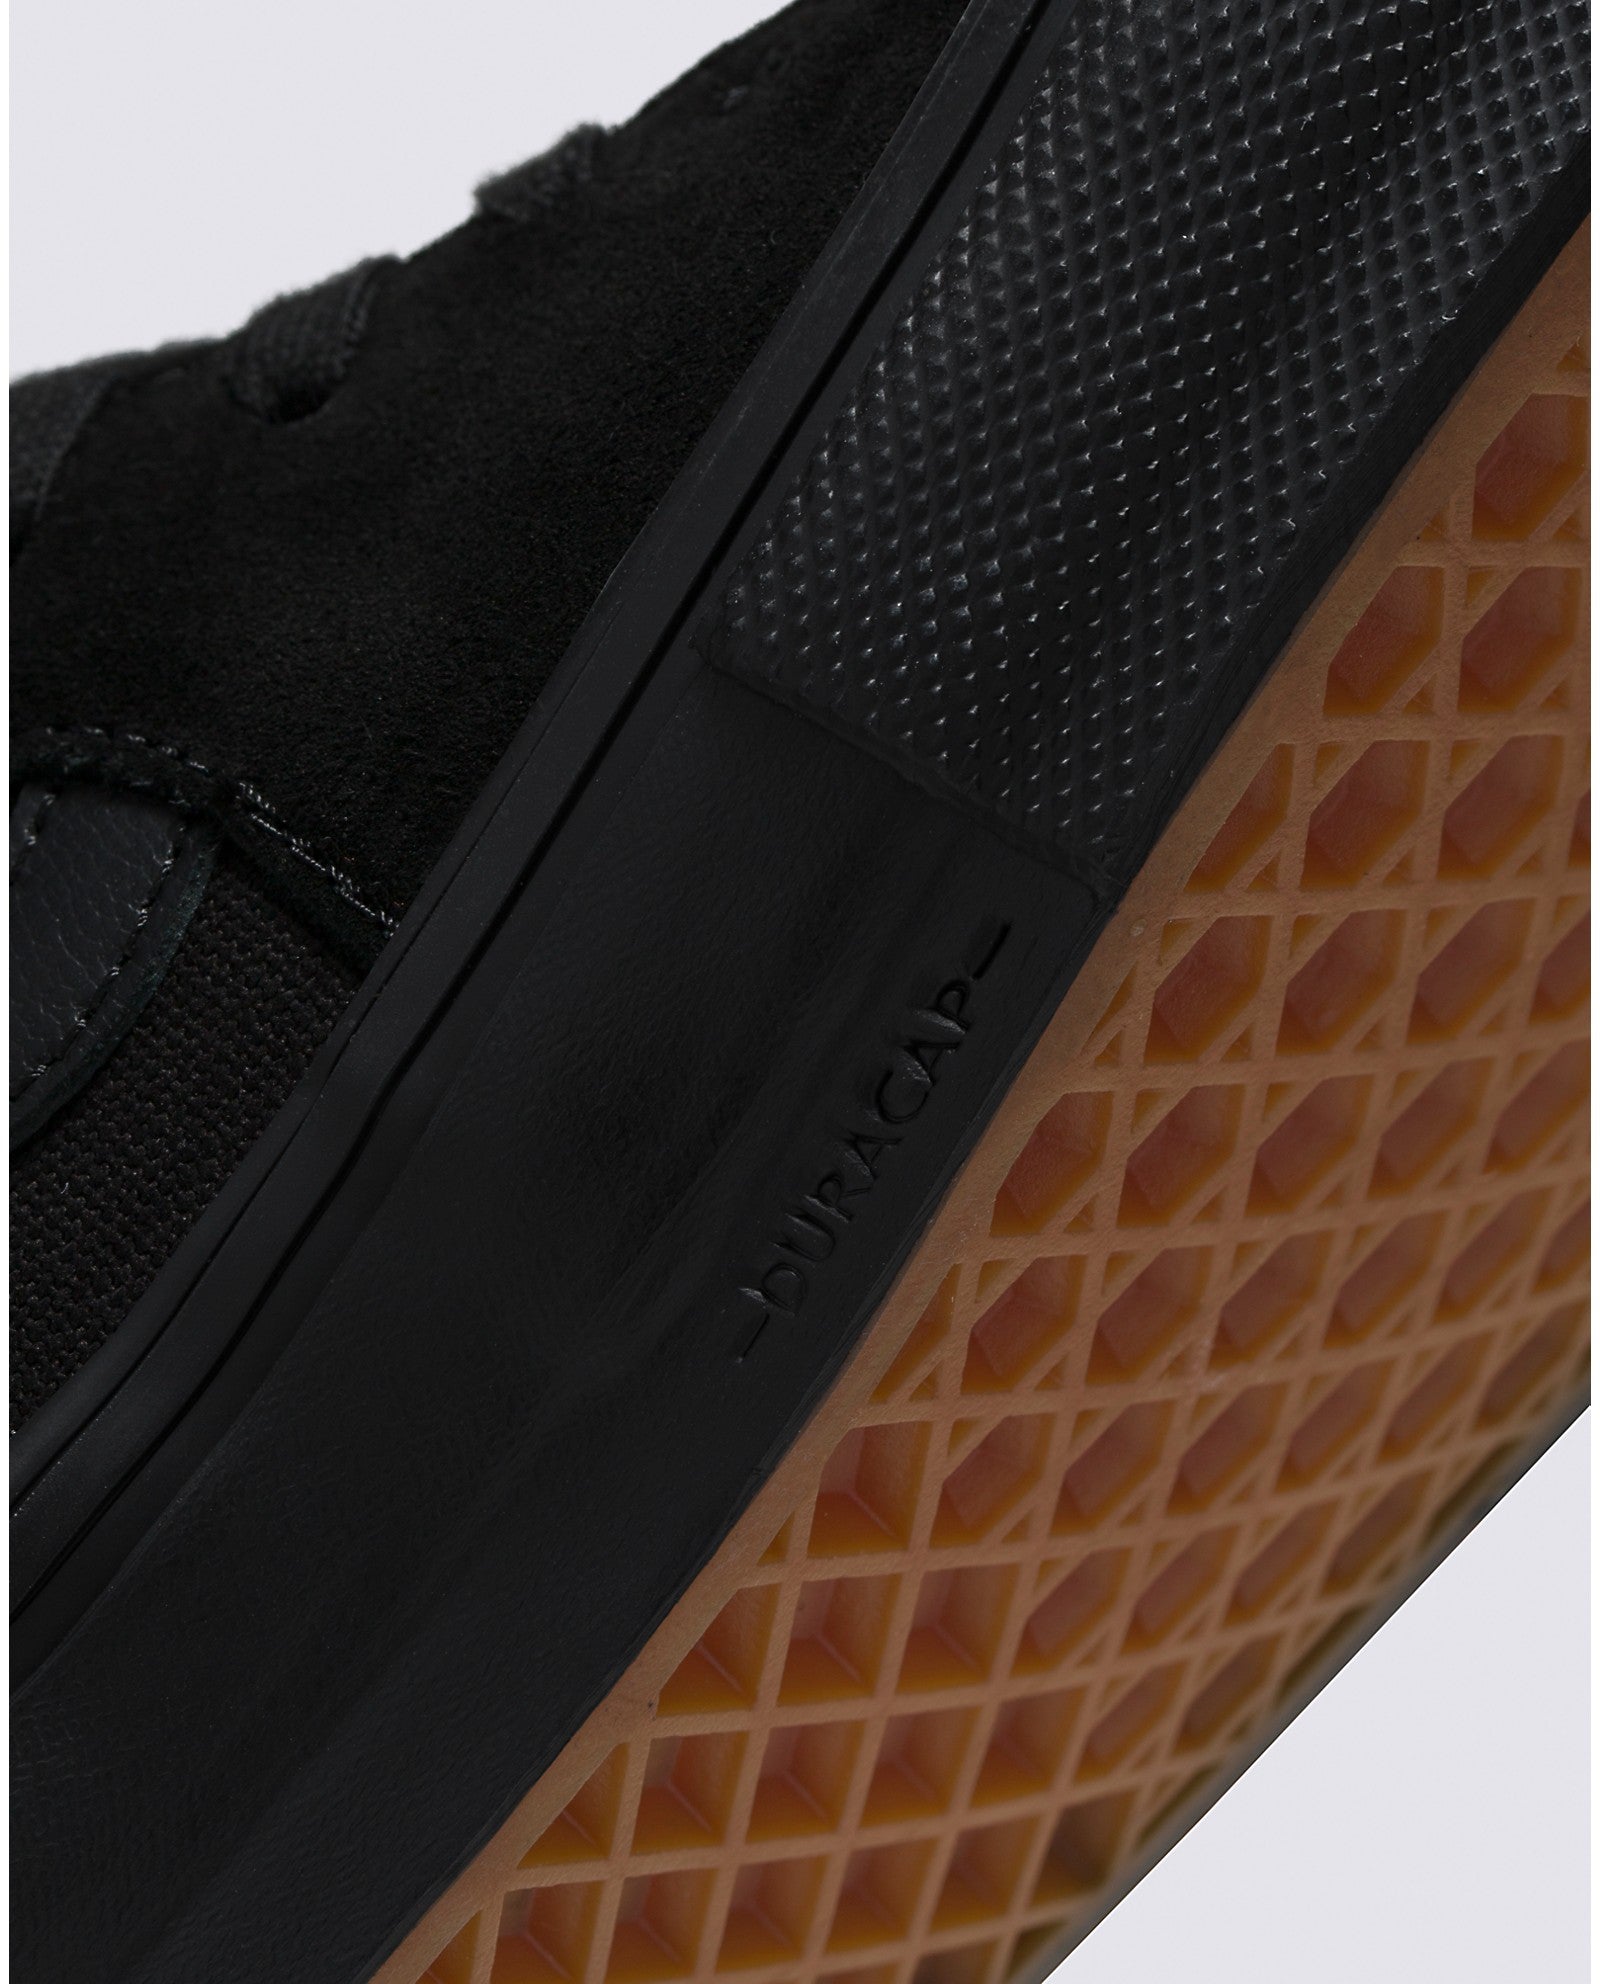 Black/Black Skate Sk8-hi Vans Skateboard Shoe Detail